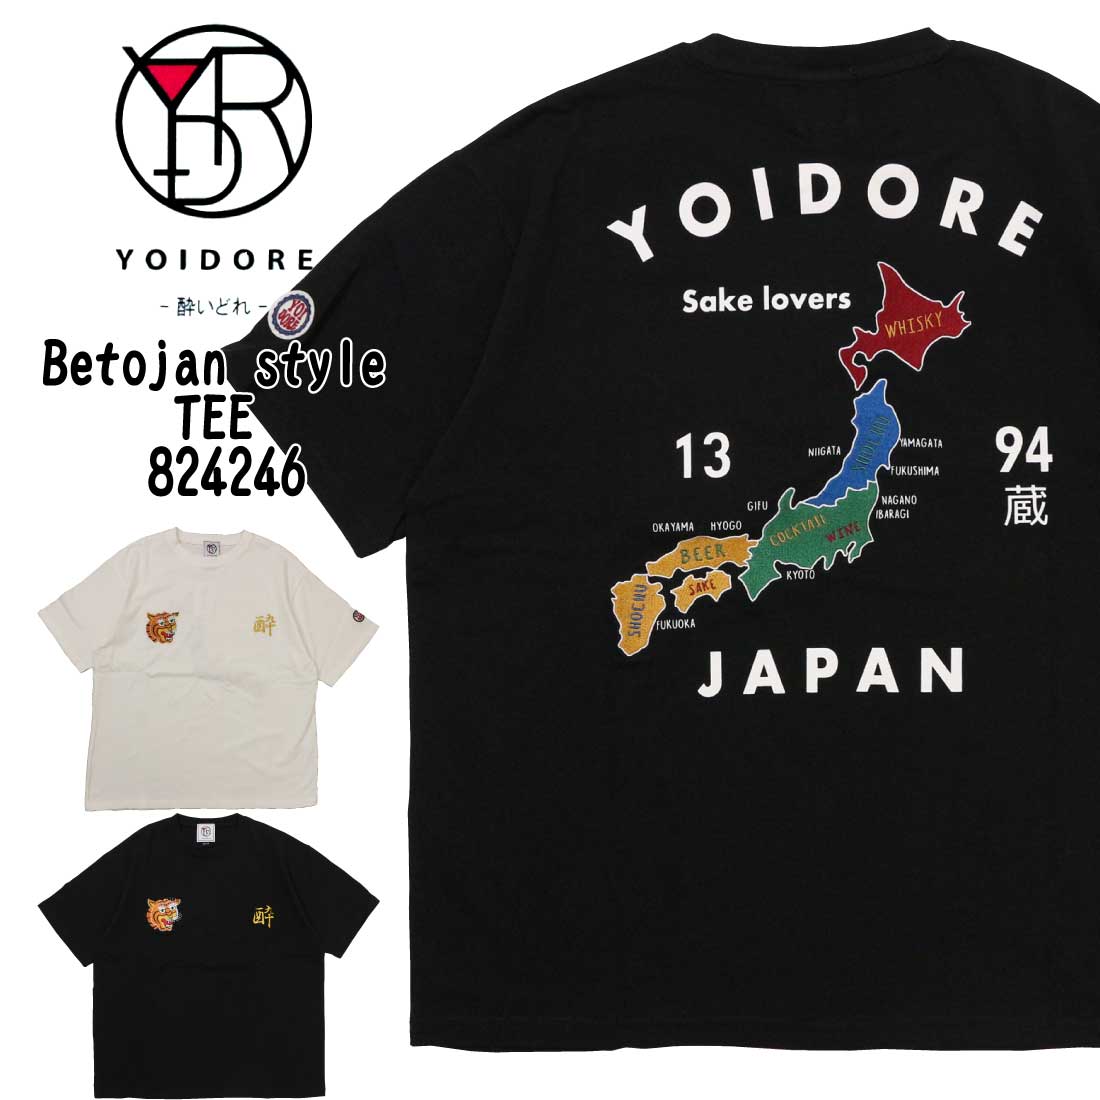 YOIDORE 酔いどれ 半袖 Tシャツ カットソー Betojan style TEE メンズ 824246 日本地図 刺繍 酔 ボックスシルエット 大きめ クルーネック